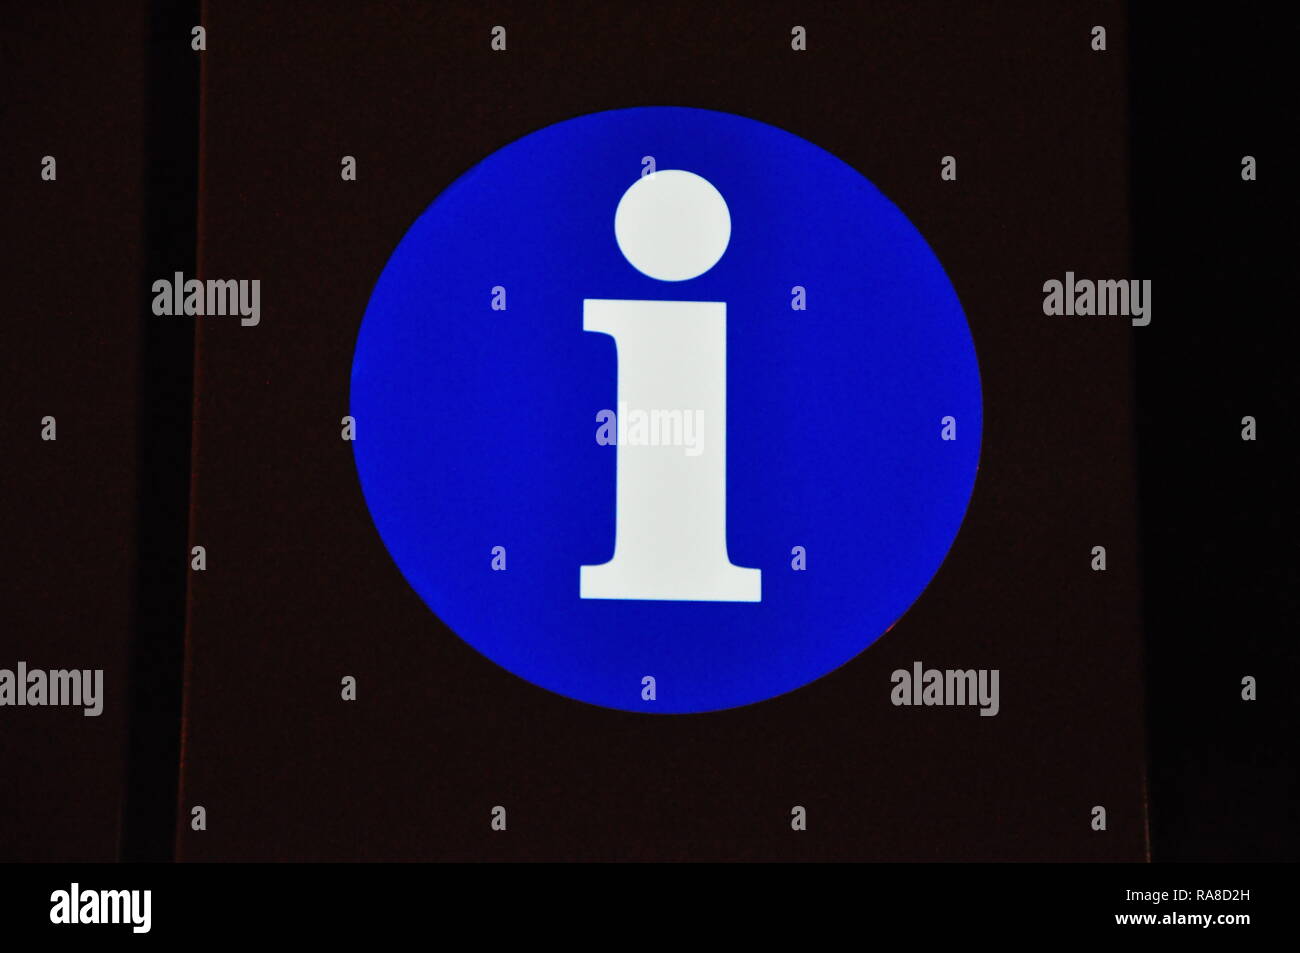 Un logo bleu avec un i au milieu, symbole de l'information. Banque D'Images